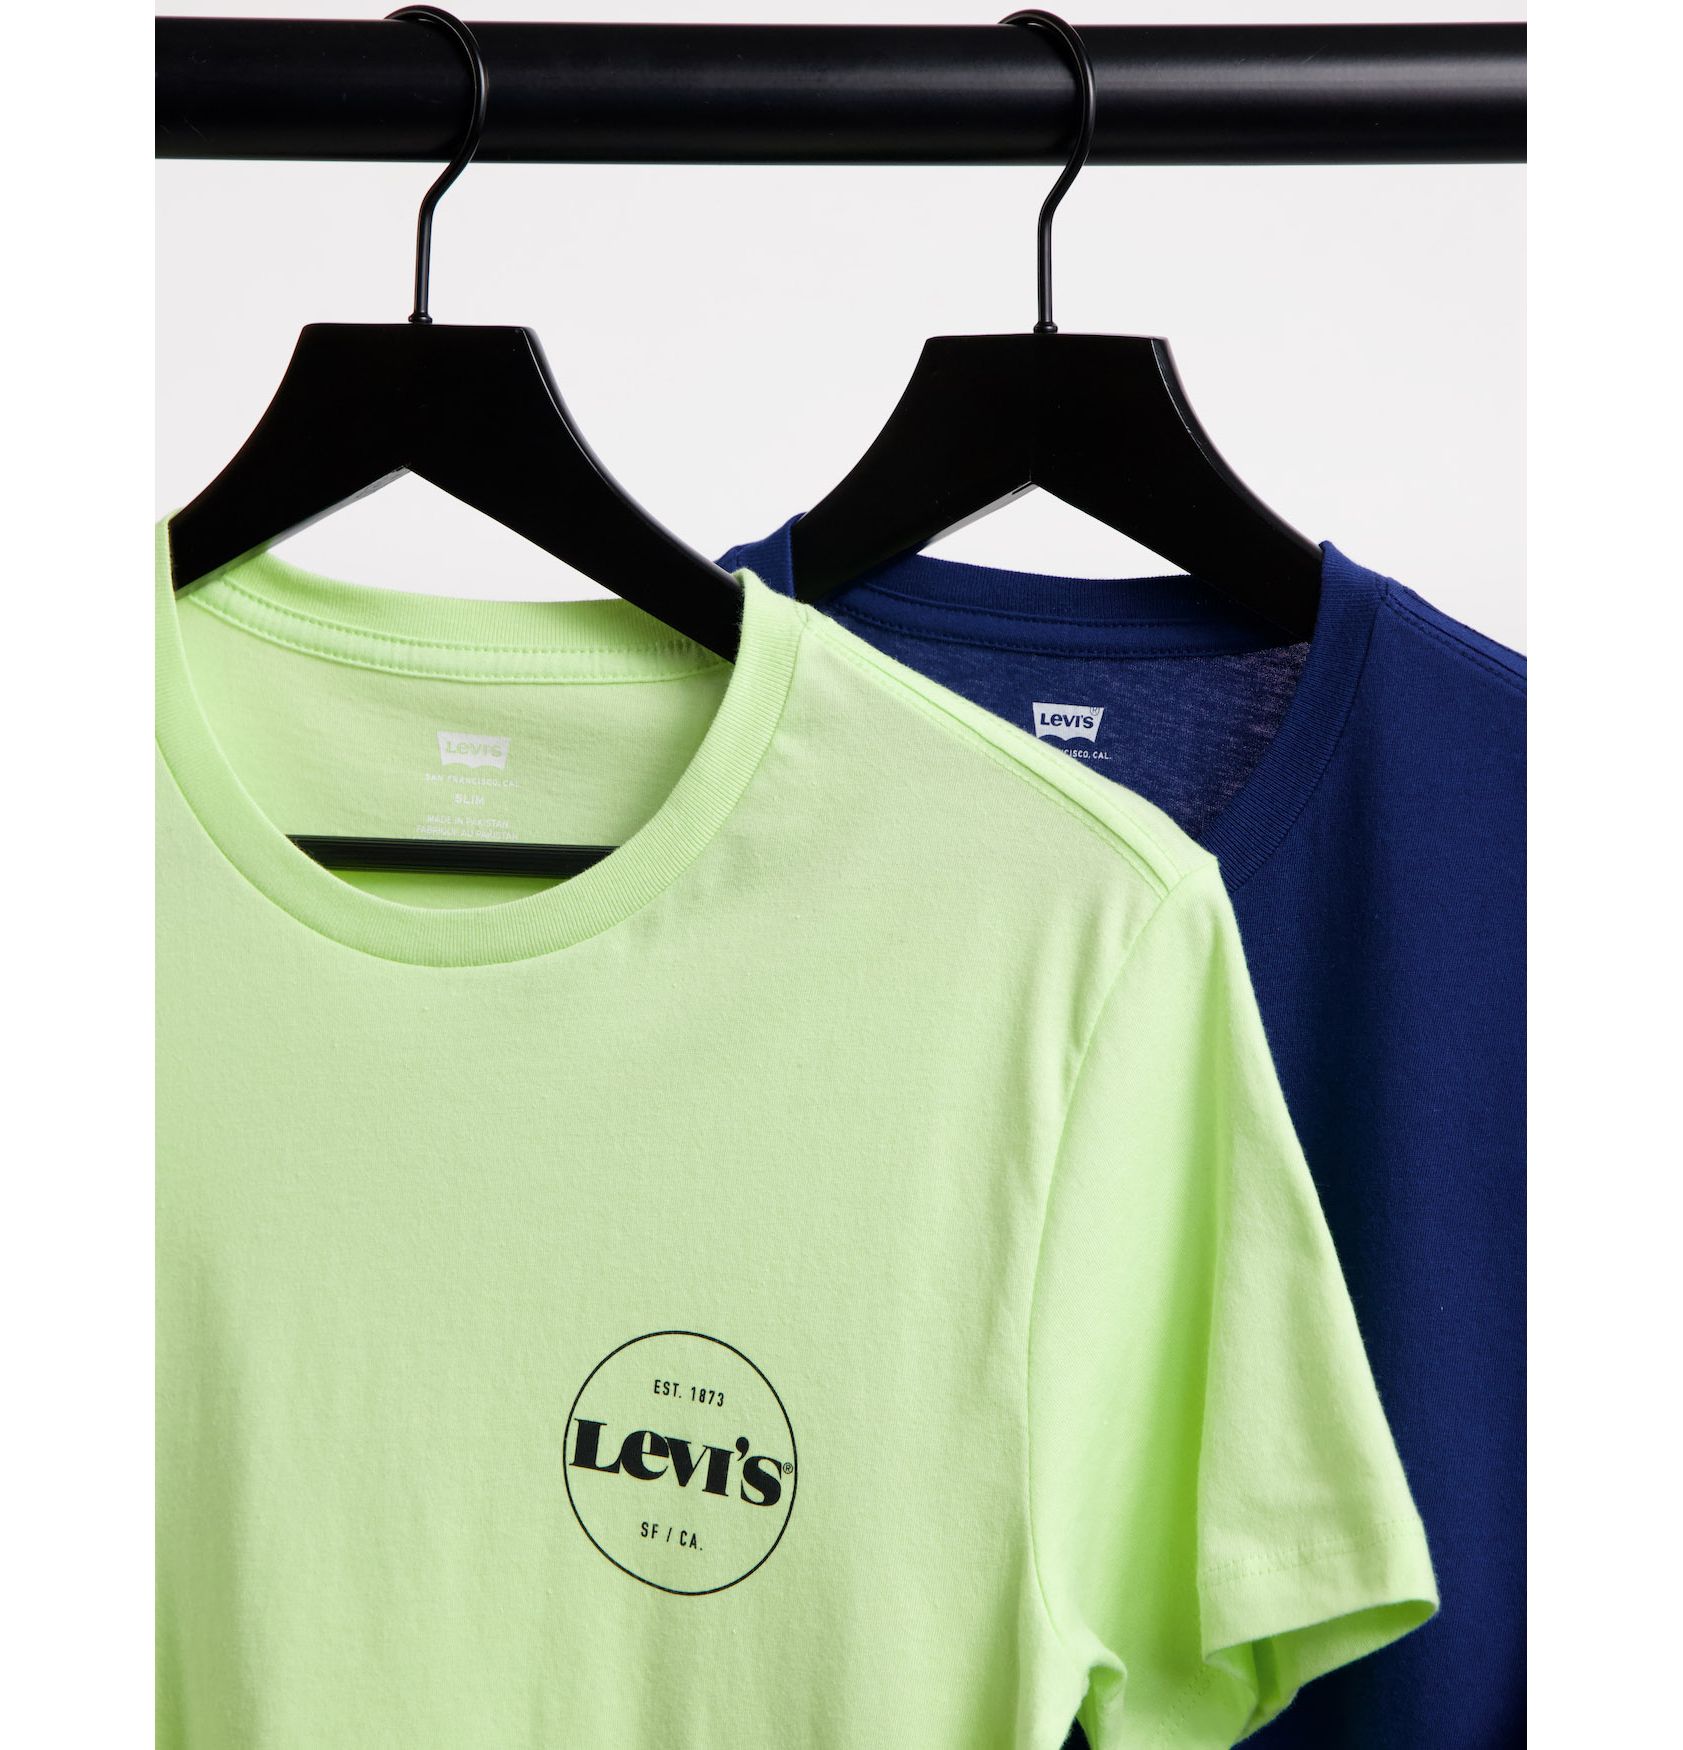 Levi's Exclusive to ASOS 2 pack modern vintage circle logo T-shirt 